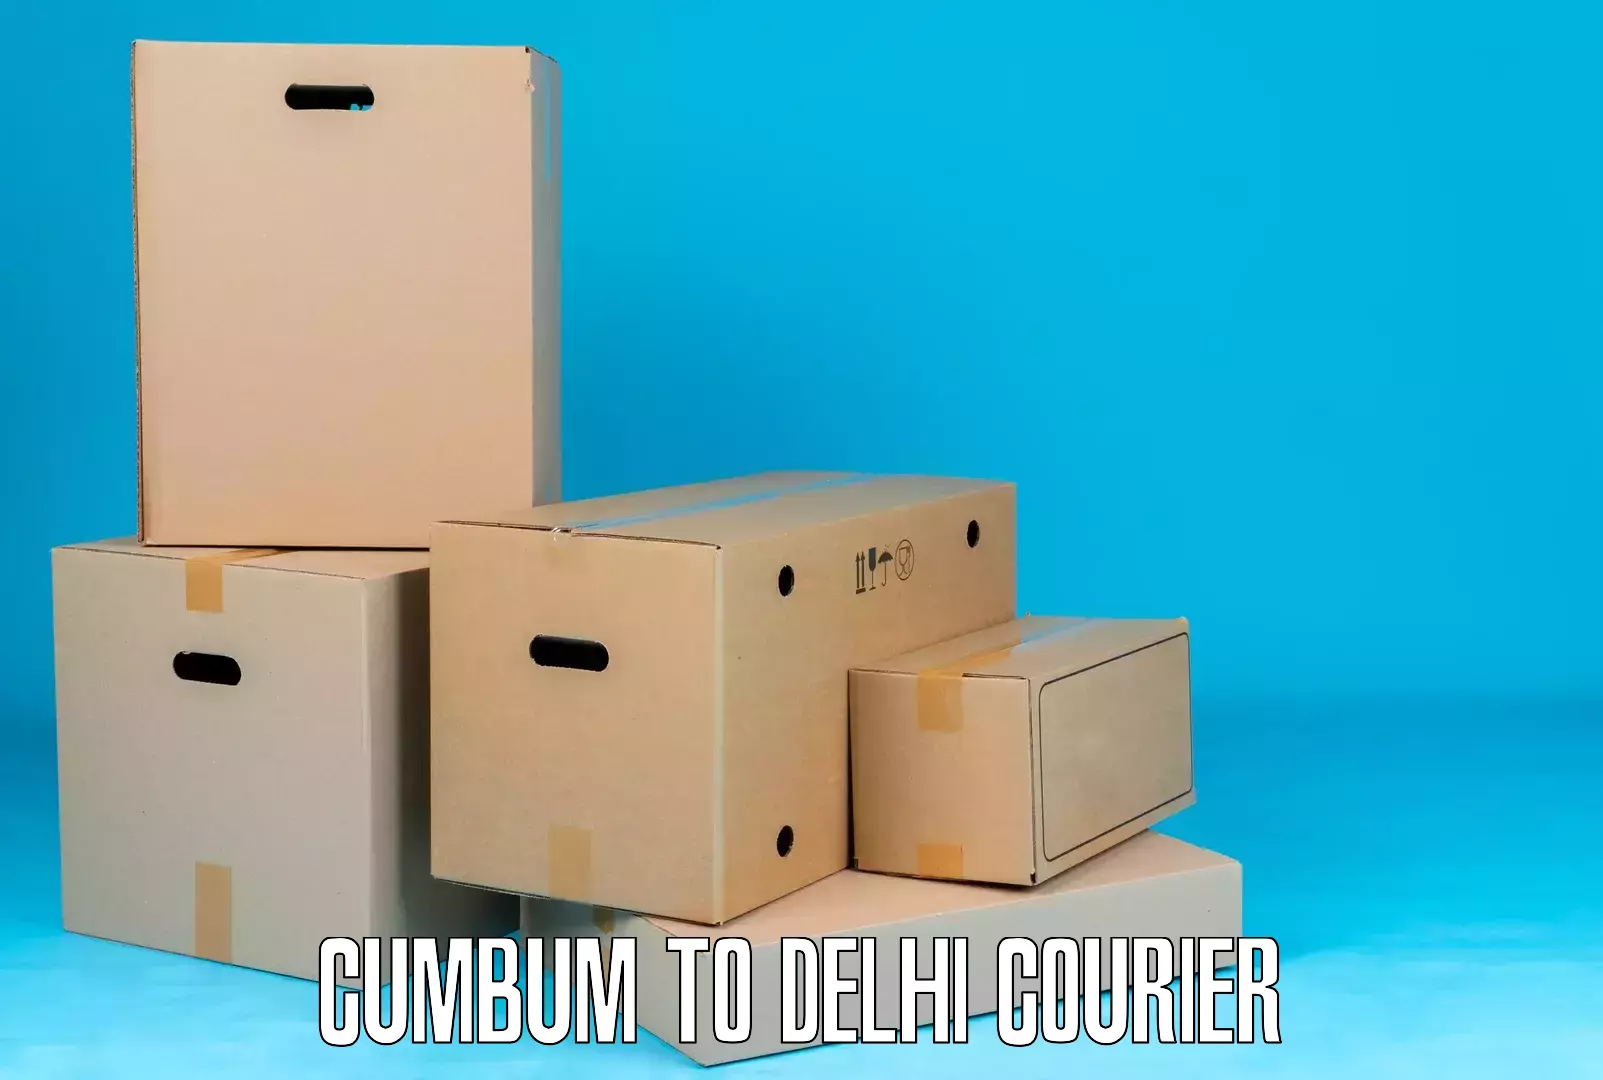 Corporate courier solutions Cumbum to Burari